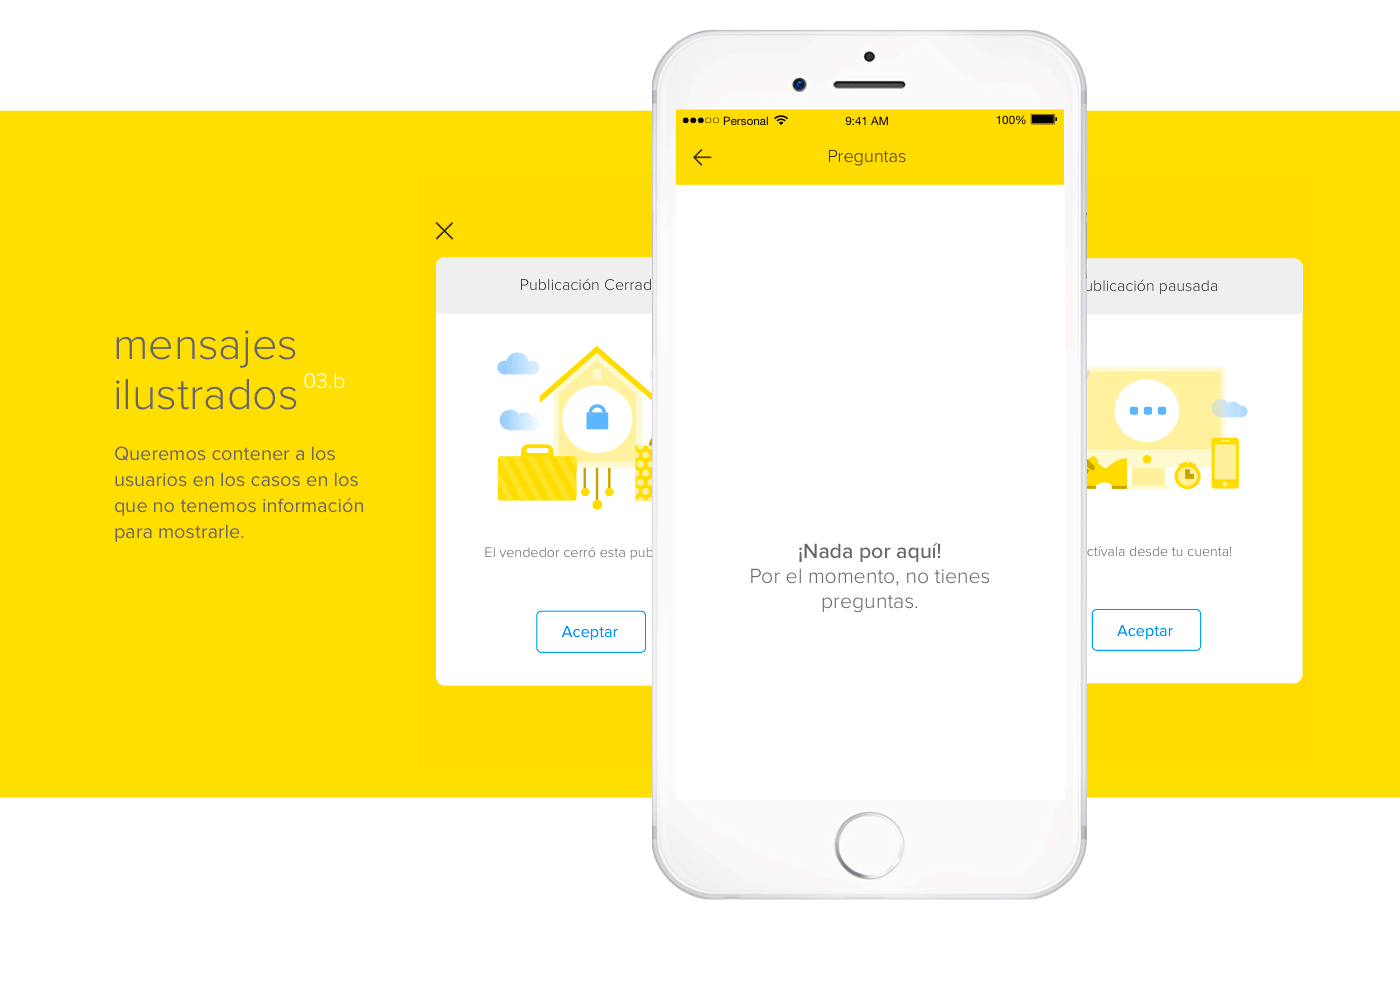 ui ux mobile Mercadolibre app flow ilustraciones vistas ios interfaz design diseño yellow amarillo MERCADO LIBRE interaction